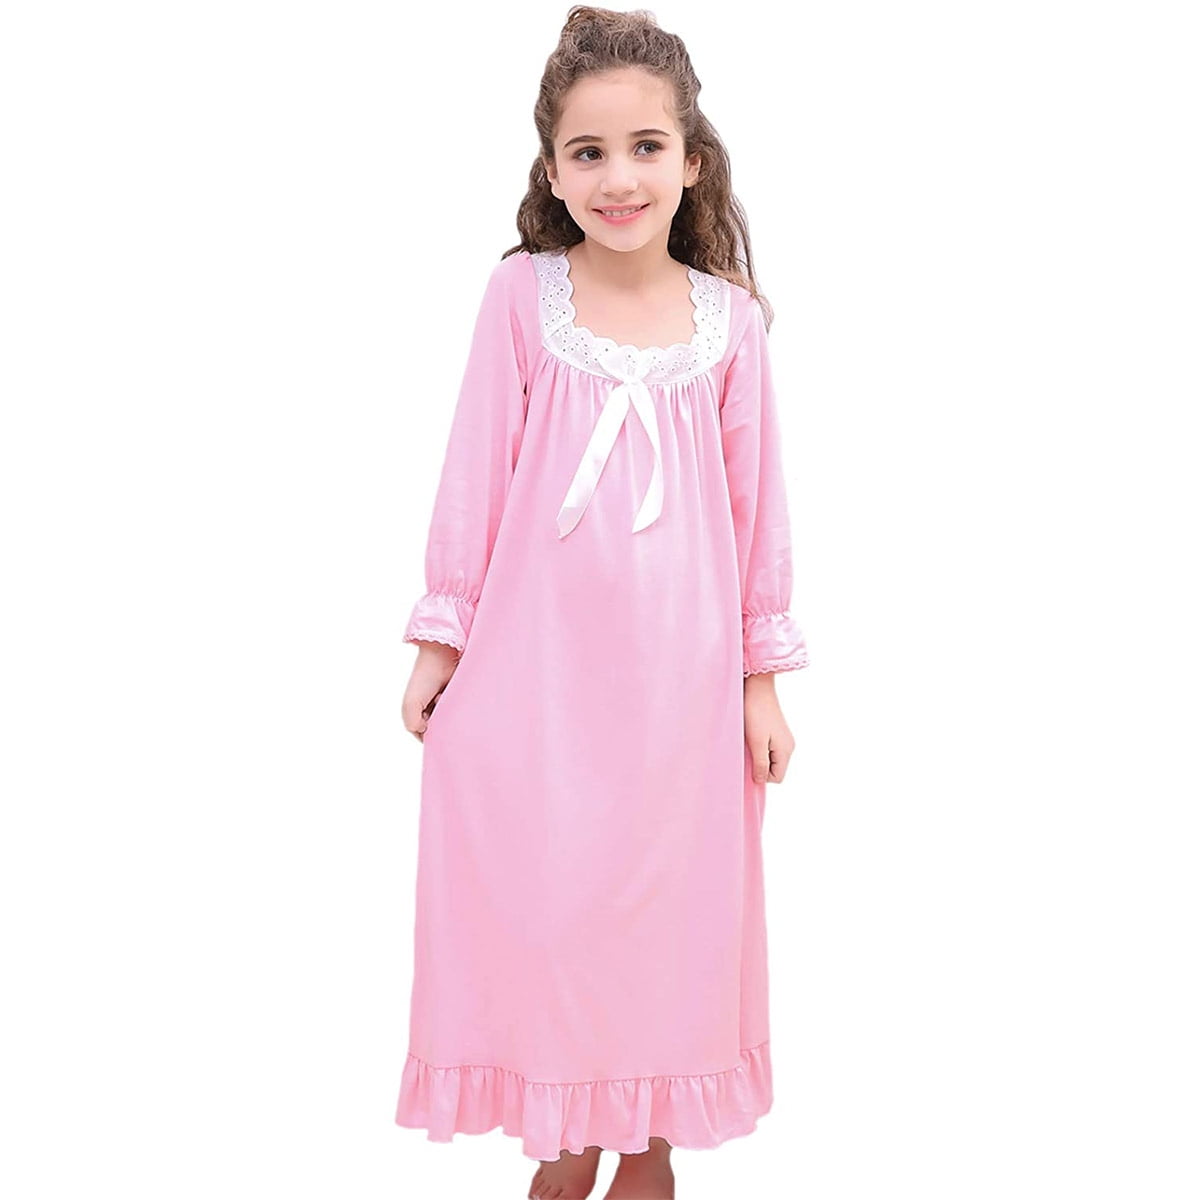 TiaoBug Kids Girls Nightgown Long Vintage Sleep Dress Princess Nighties Nightwear Cotton Pajamas